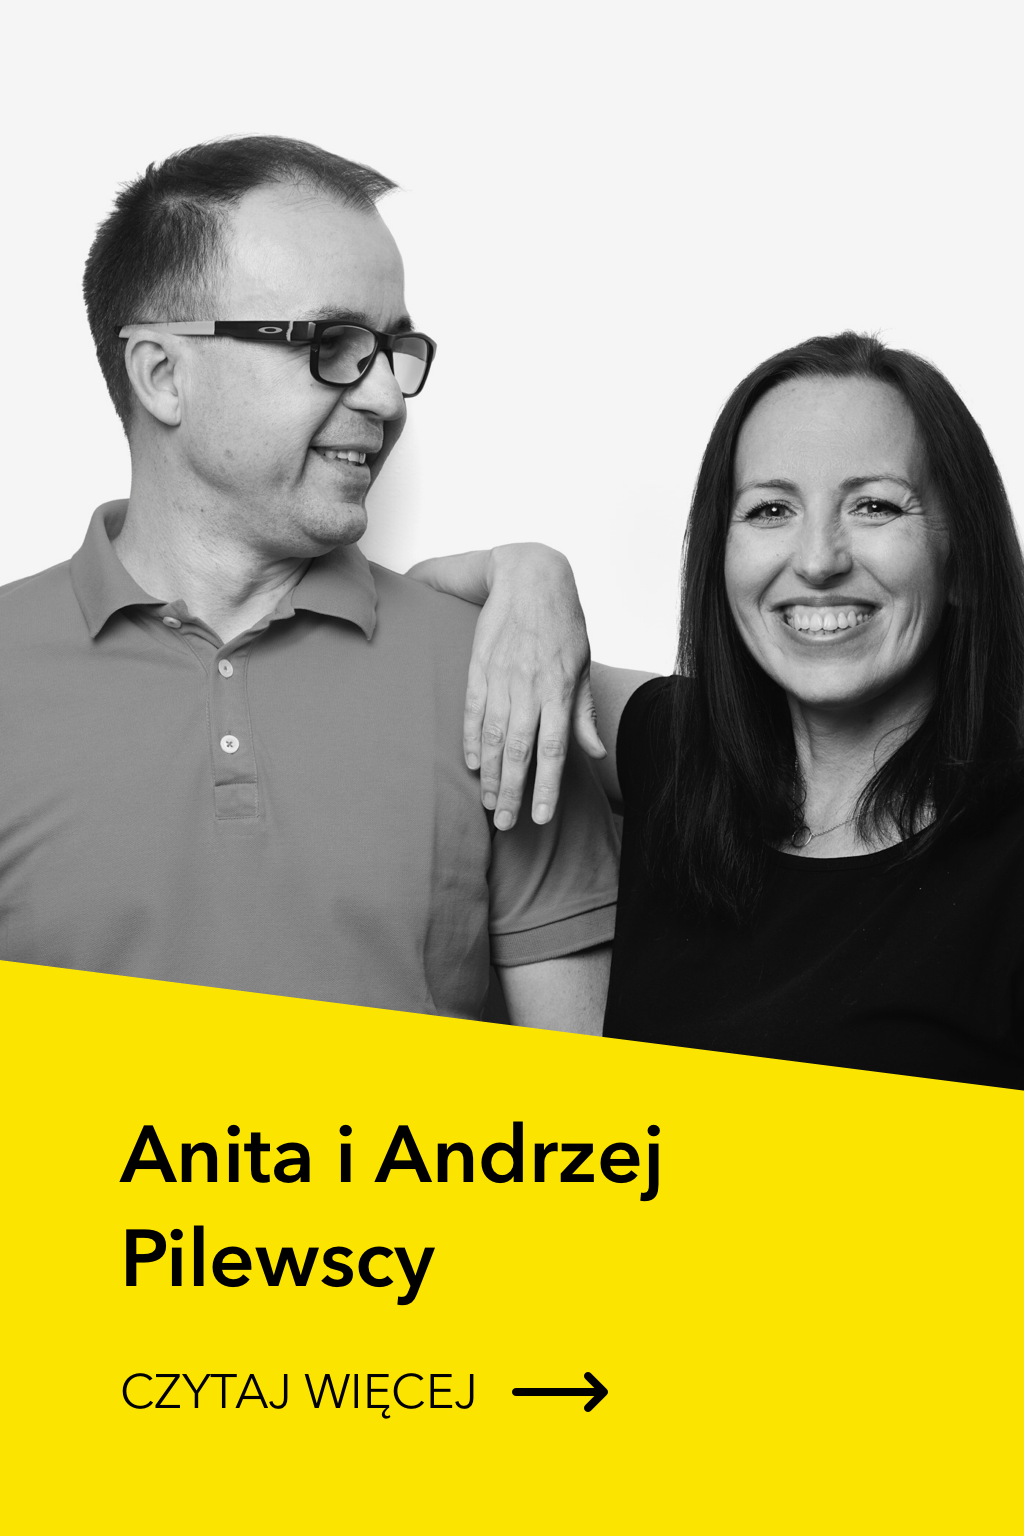 Anita i Andrzej Pilewscy